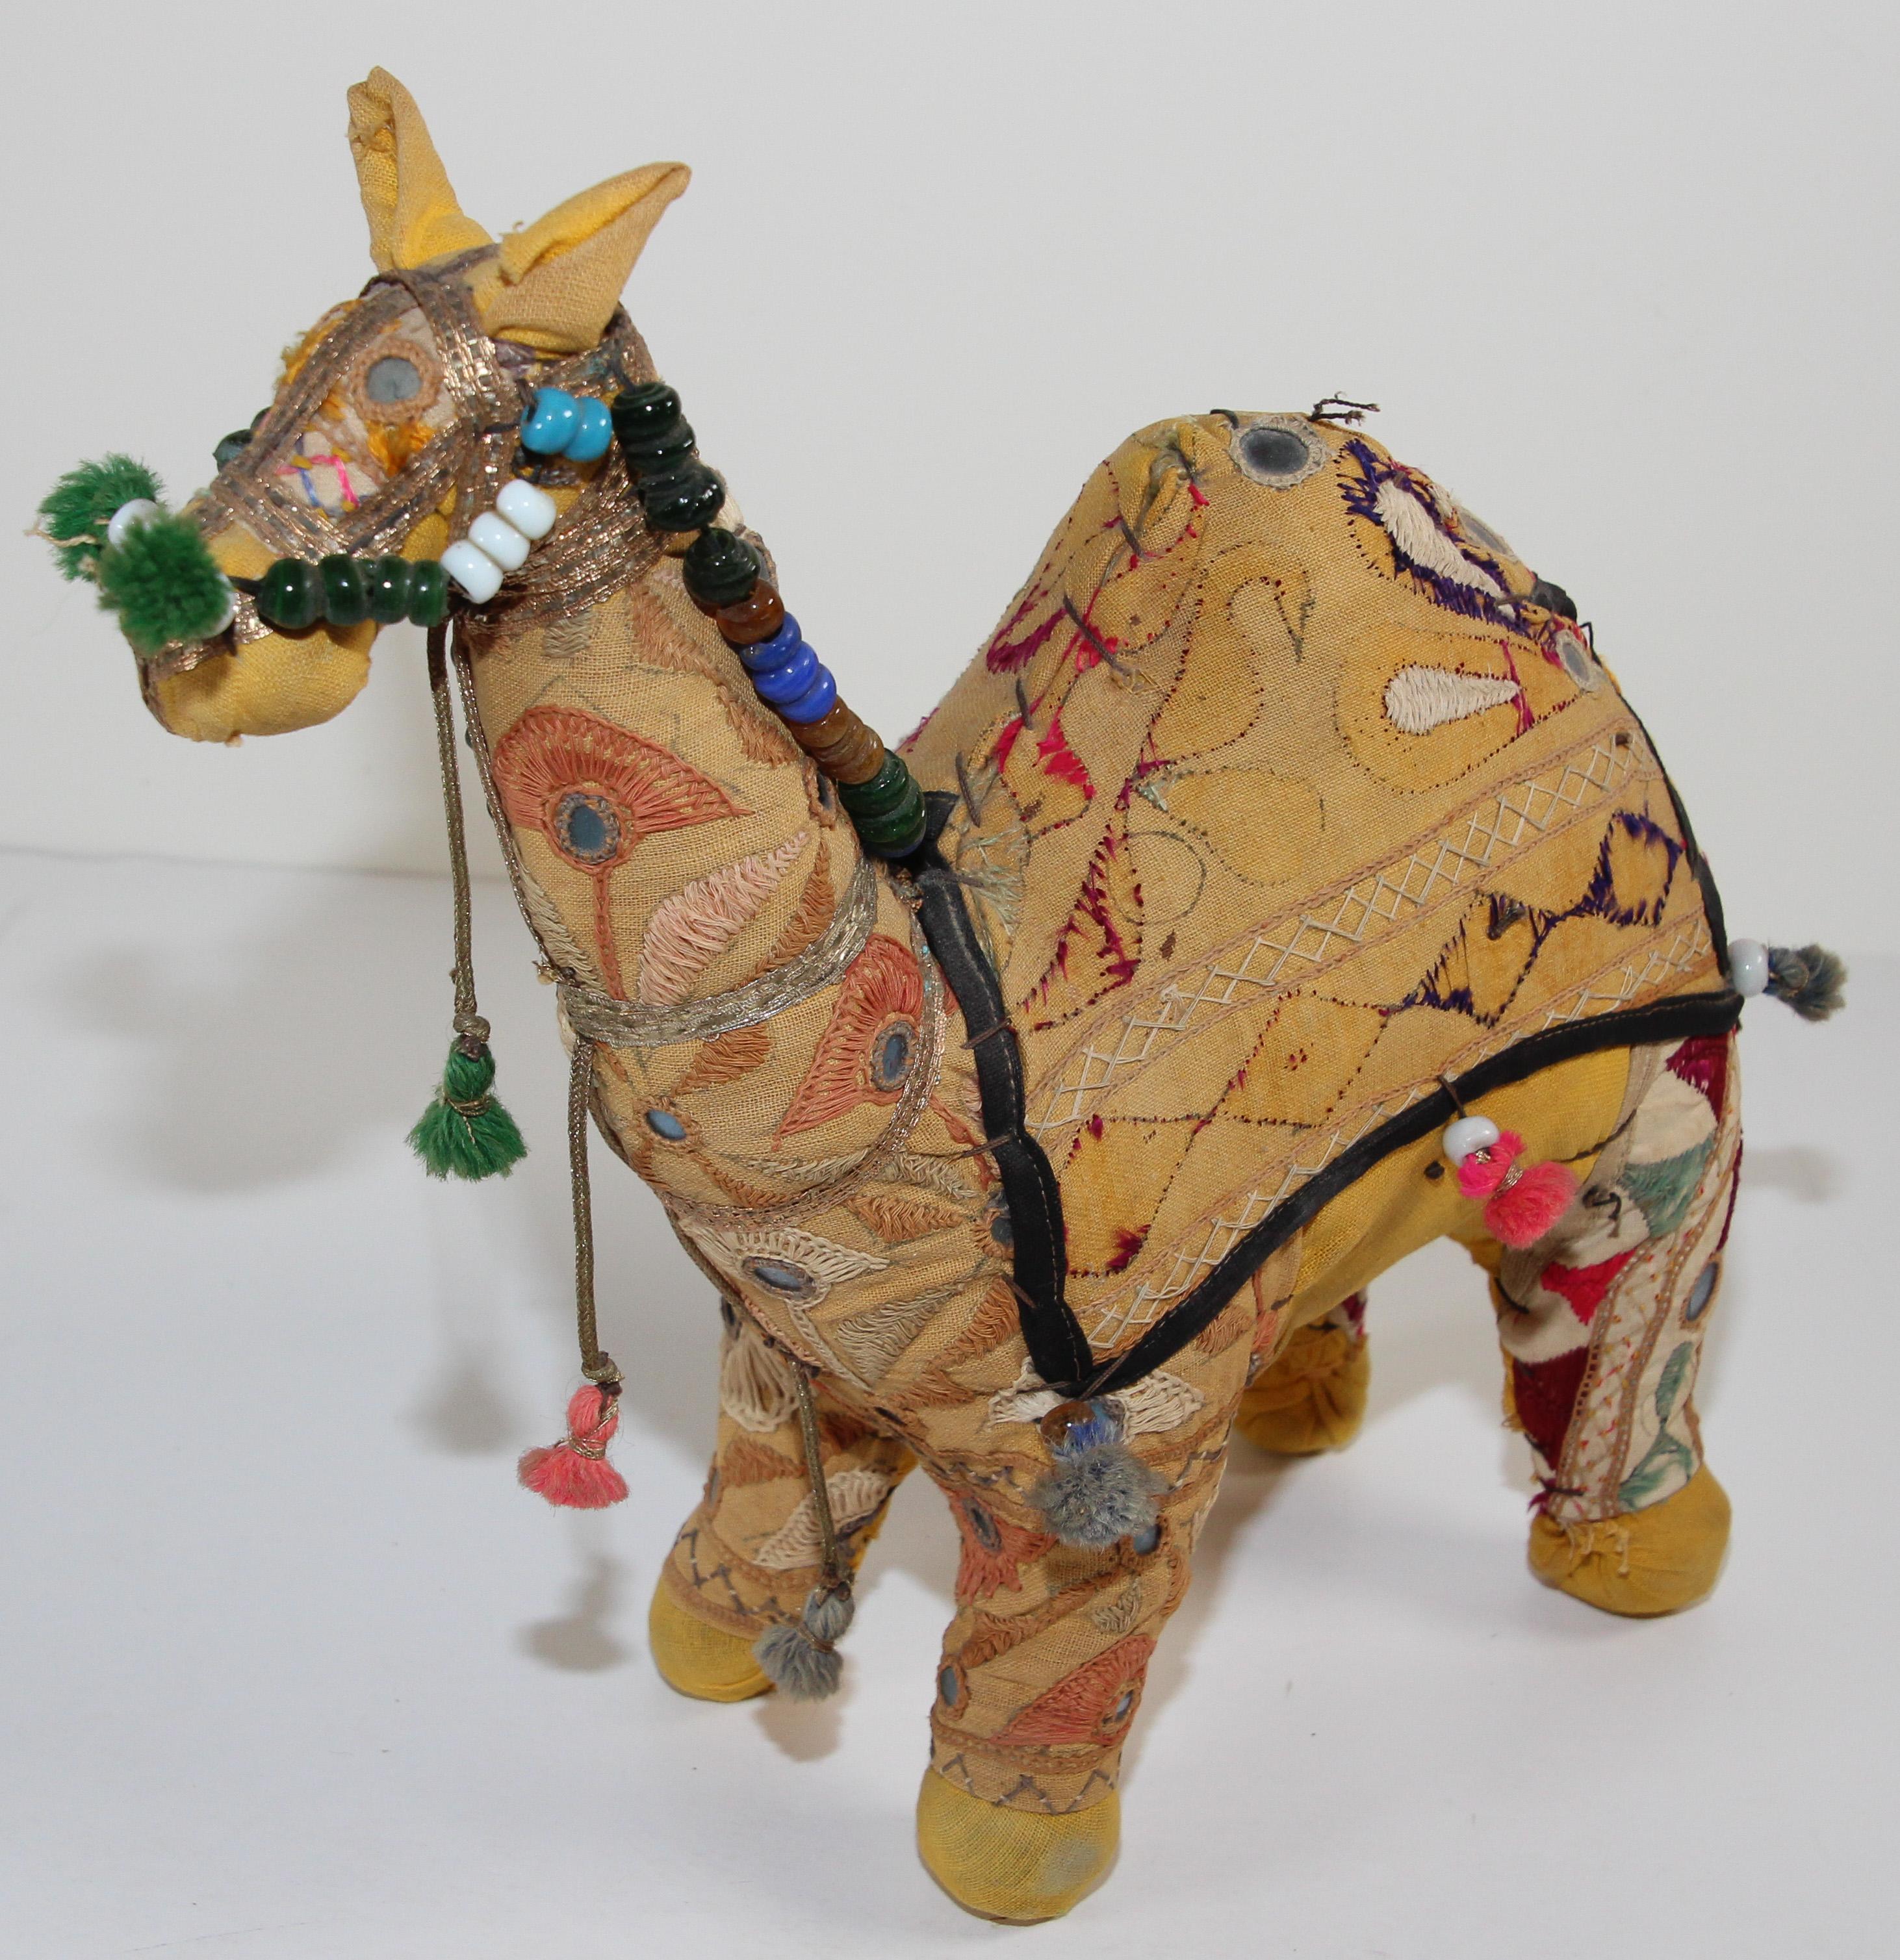 Handgefertigt in Rajasthan, Indien, buntes Kamelspielzeug aus Stoff.
Vintage kleines Kamel ausgestopft Baumwolle bestickt und mit kleinen Spiegeln verziert, große Sammlerstück.
Anglo Raj, kleines ausgestopftes Kamel, das die zeremonielle